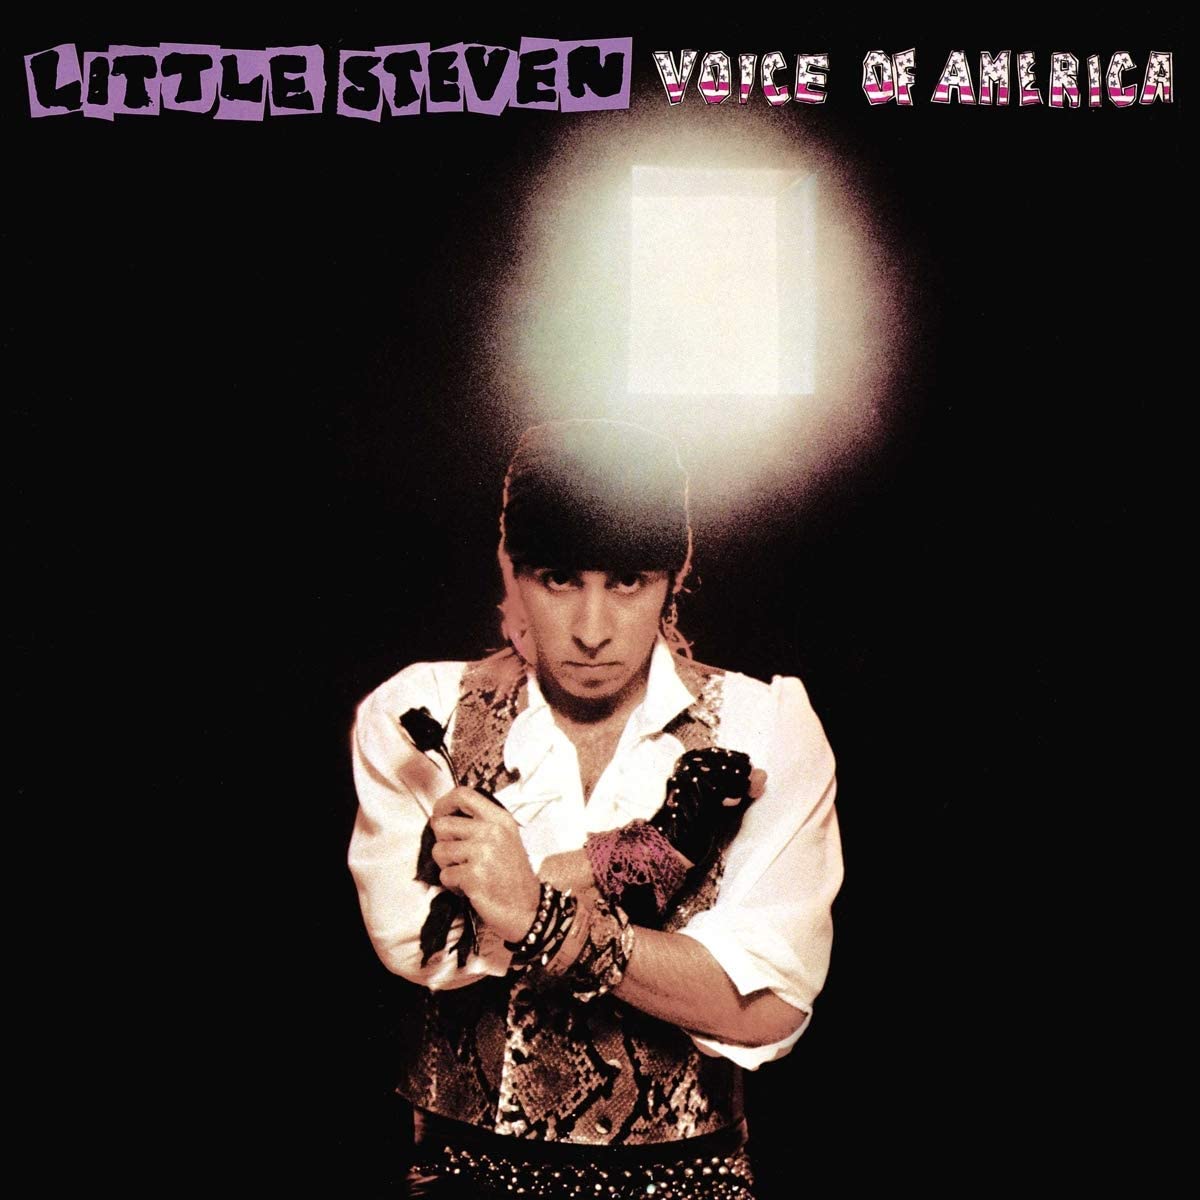 Little Steven Voice Of America